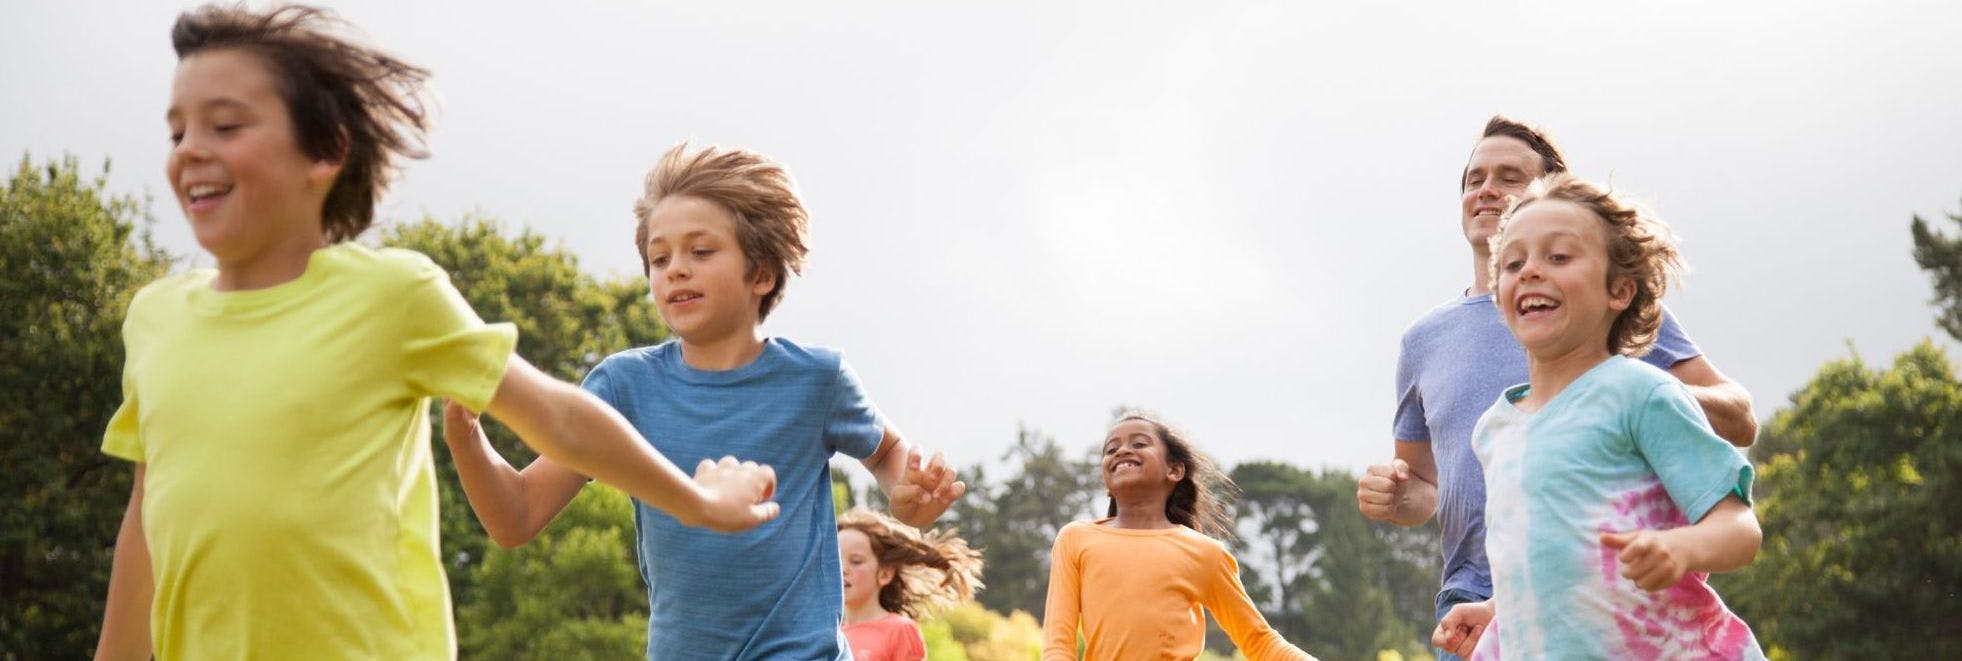 children running together